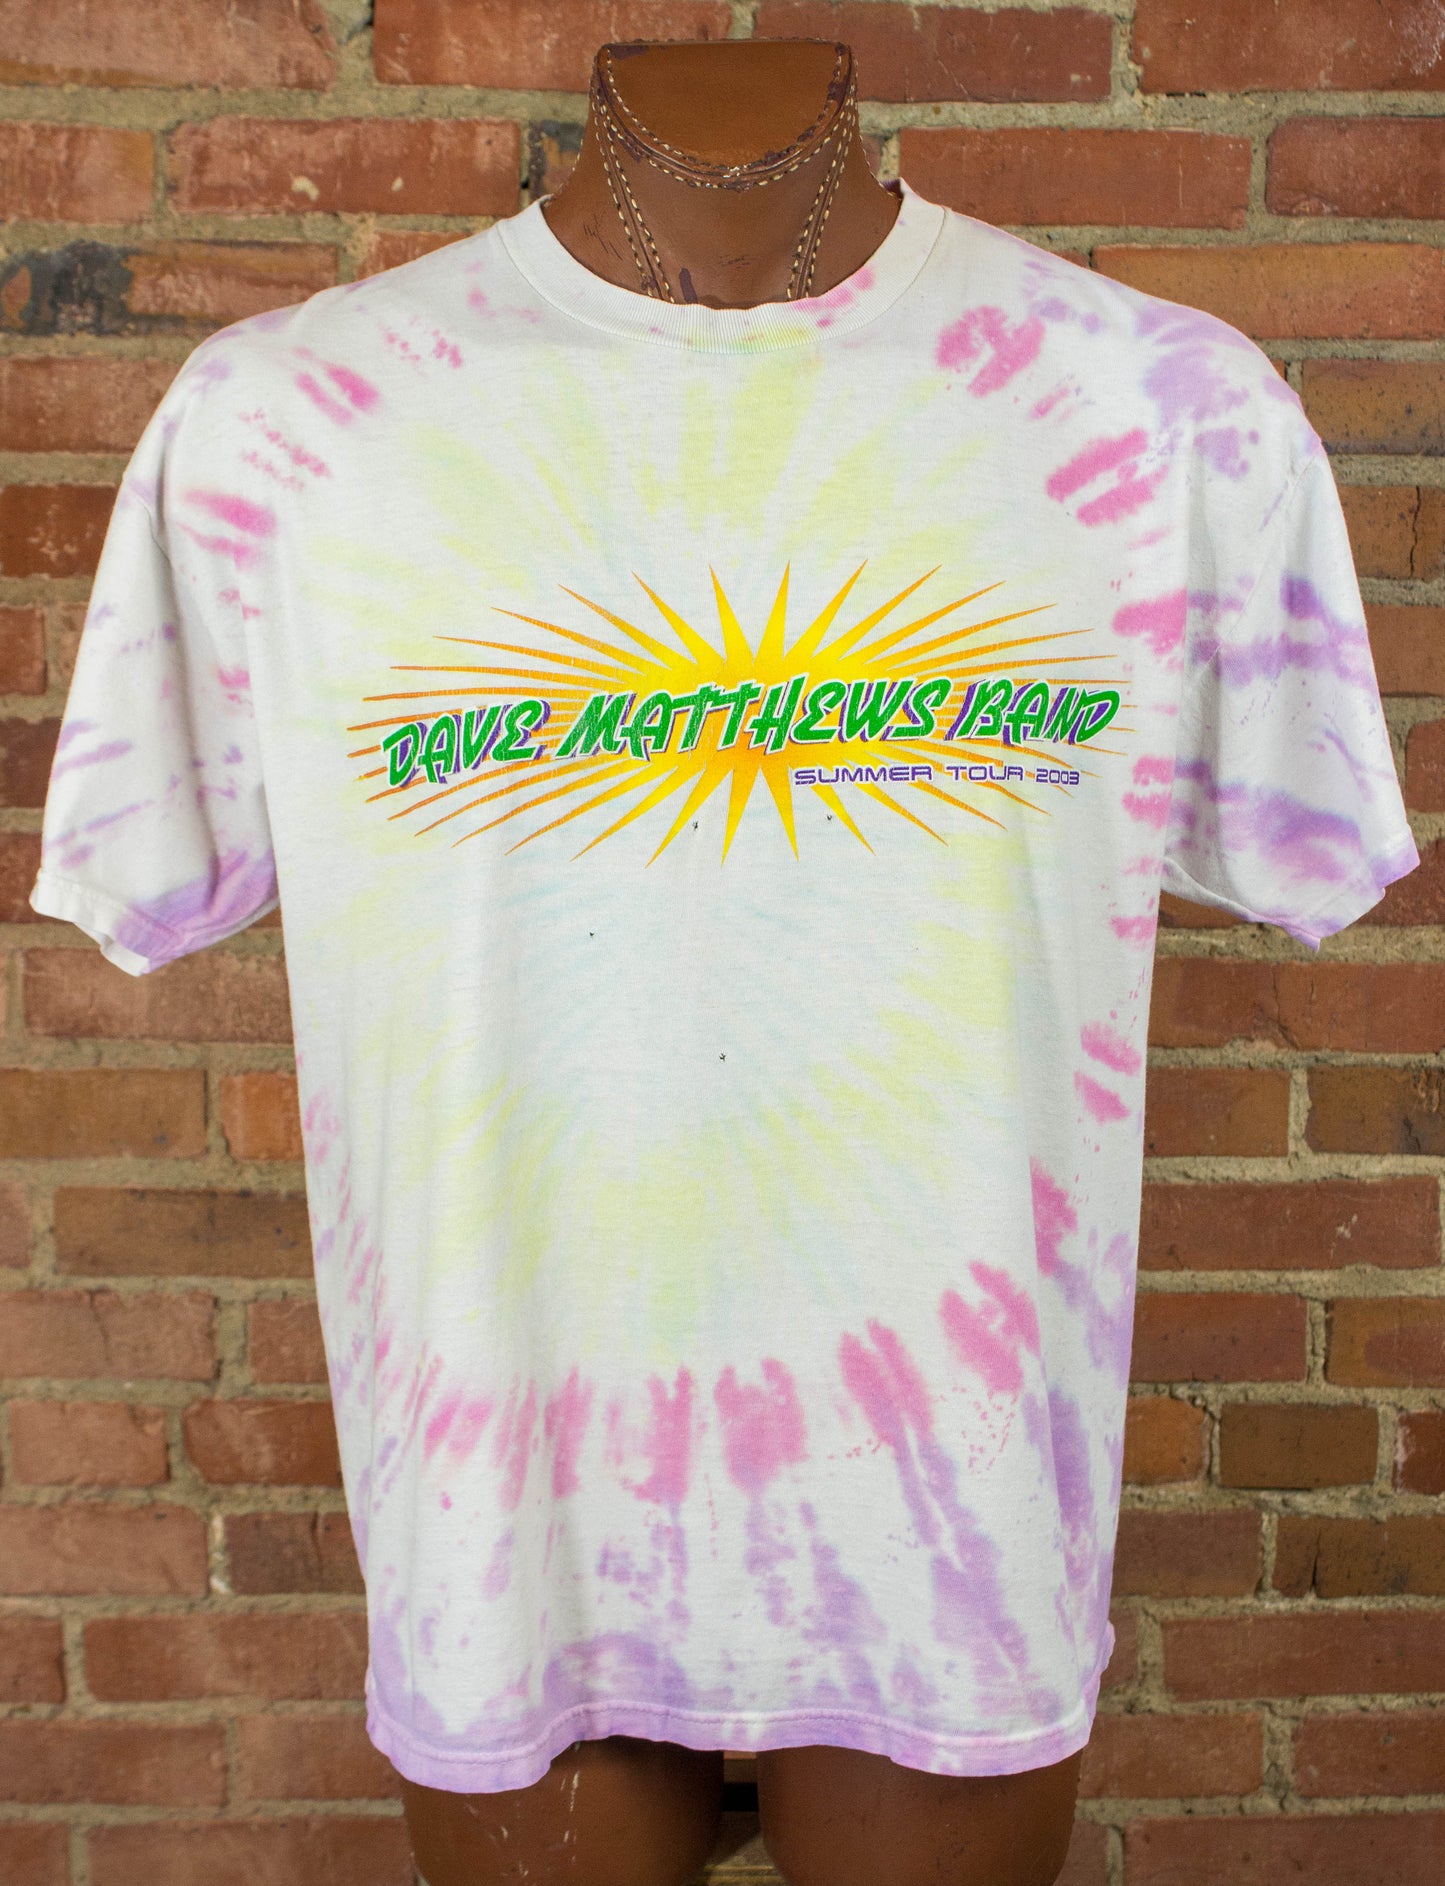 Vintage Dave Matthews Band Concert T Shirt 2003 Summer Tour Tie Dye Parking Lot Bootleg XL